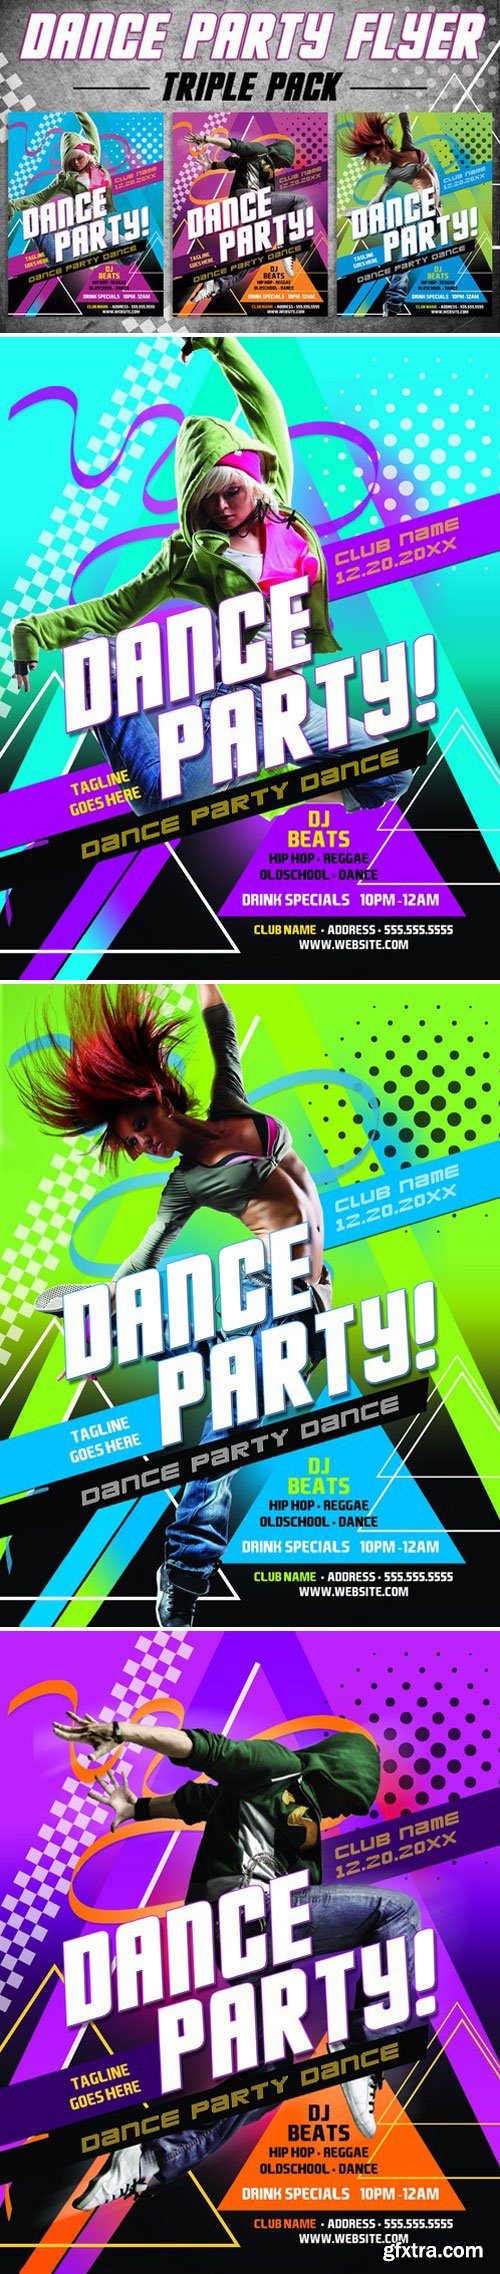 CM257977 - 3 Dance Party Flyer